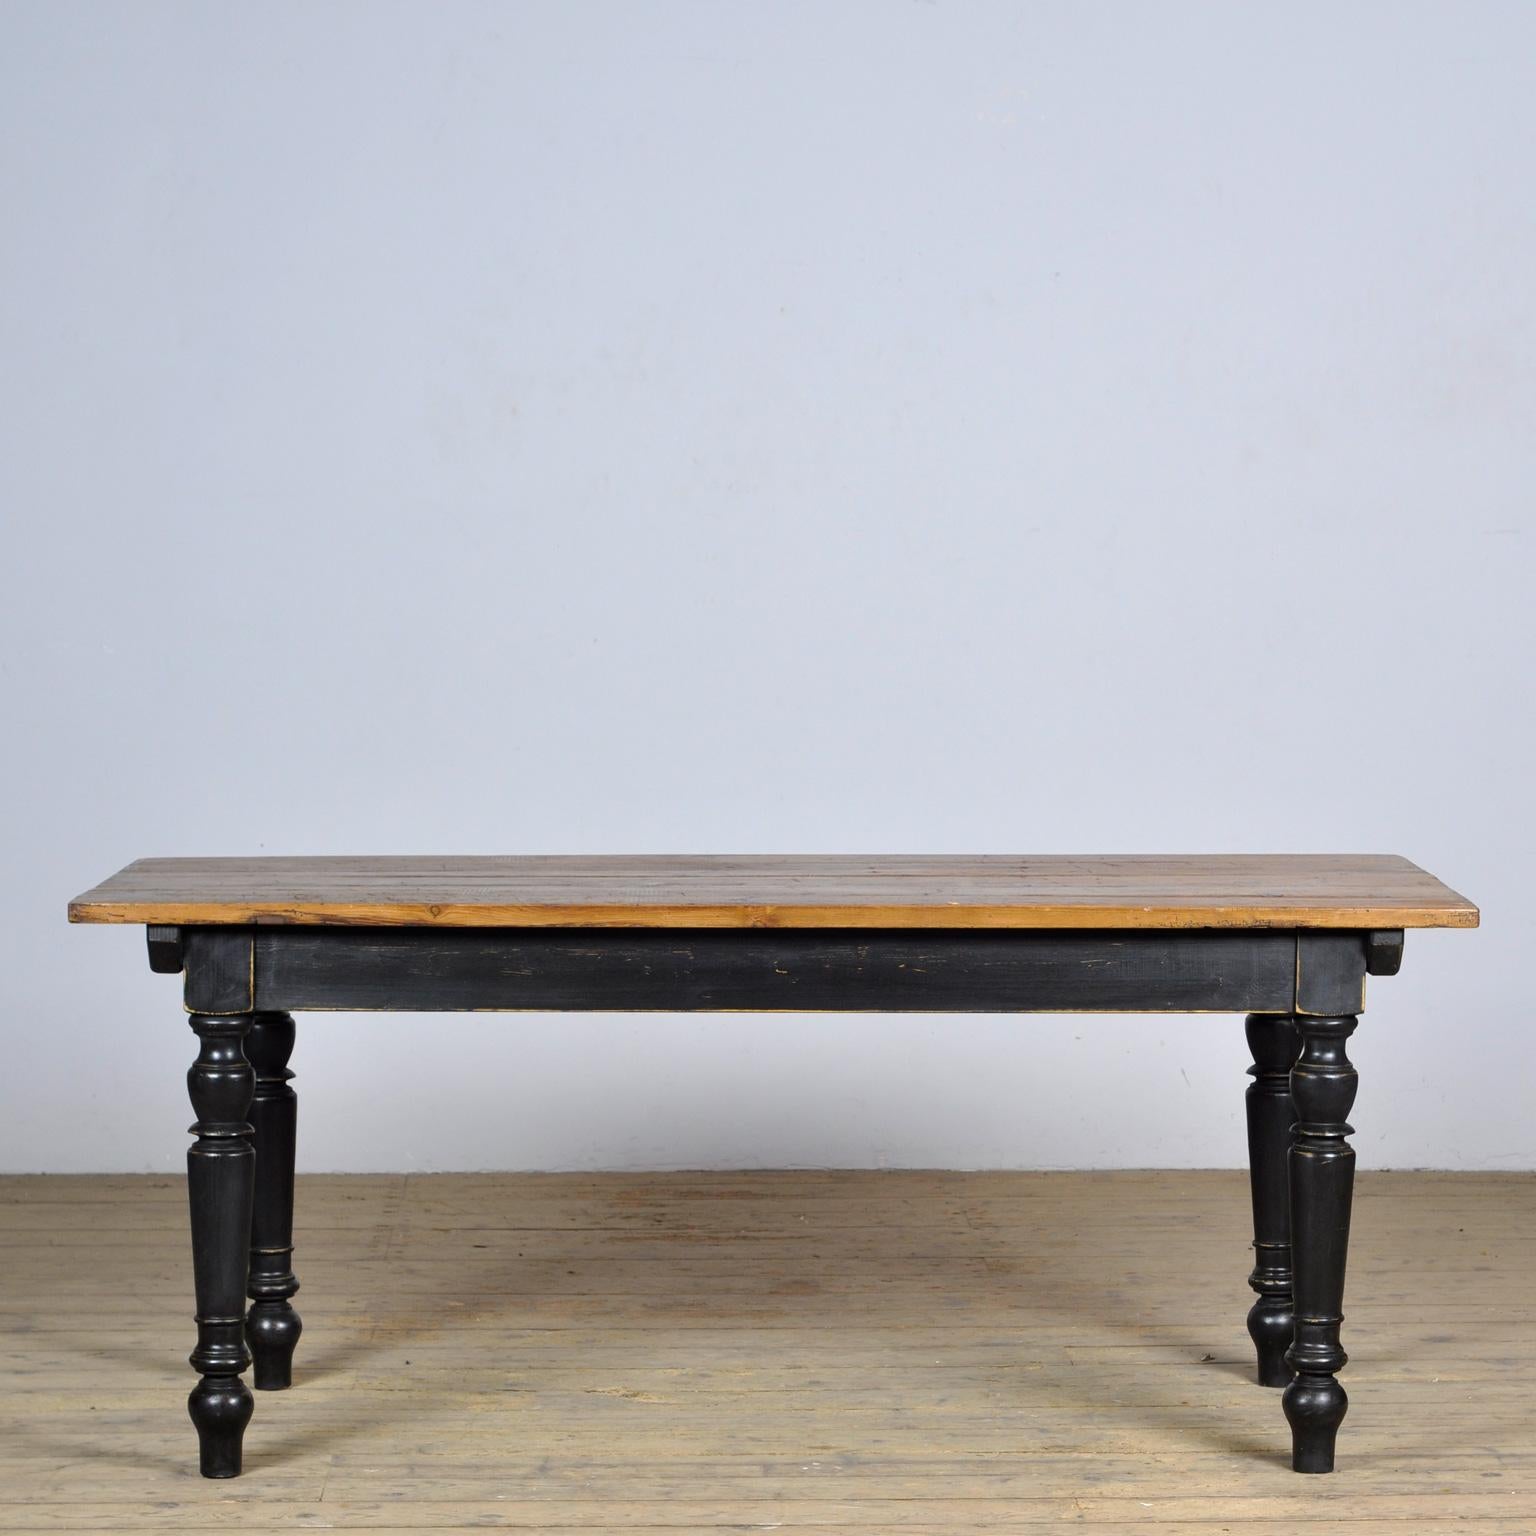 Bauernhoftisch mit schönem gestresstem Oberteil. Der Deckel wurde um 1920 hergestellt. Die Beine sind neu. Der Tisch bietet Platz für 8 Personen.